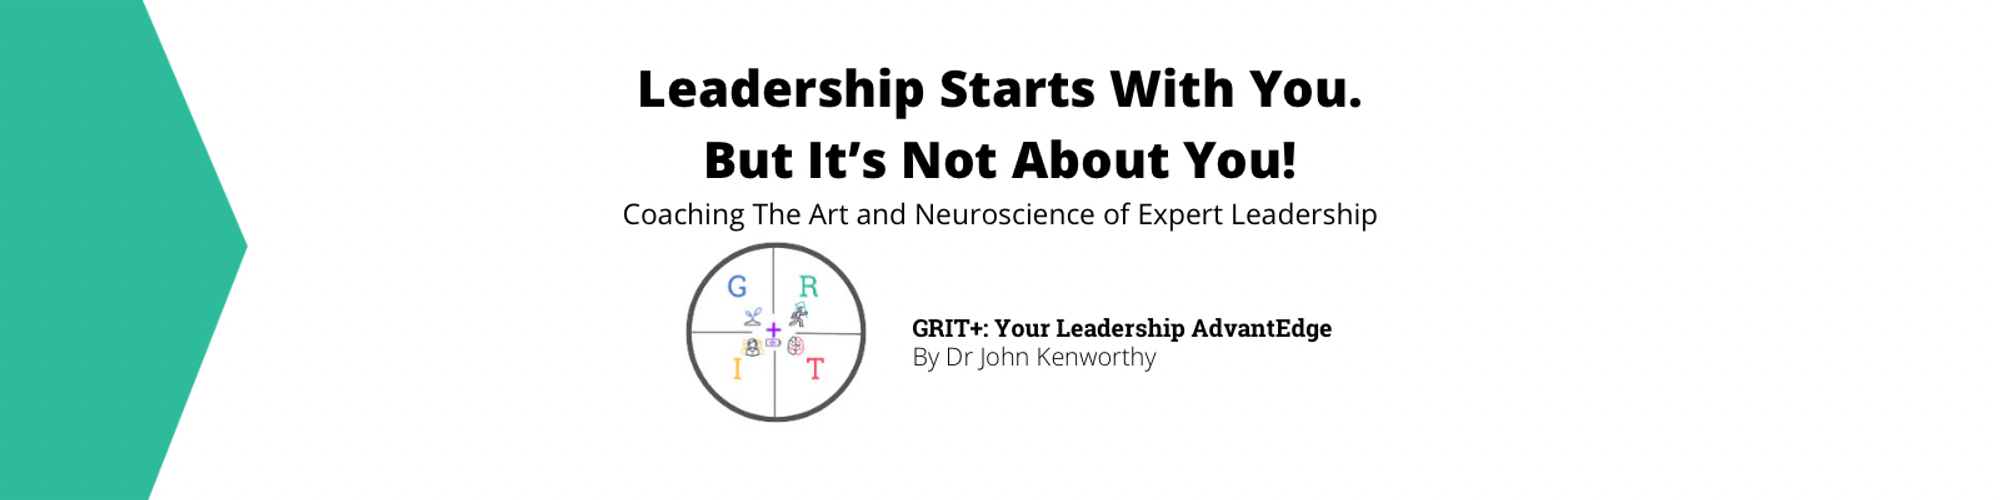 GRIT+ Your Leadership AdvantEdge